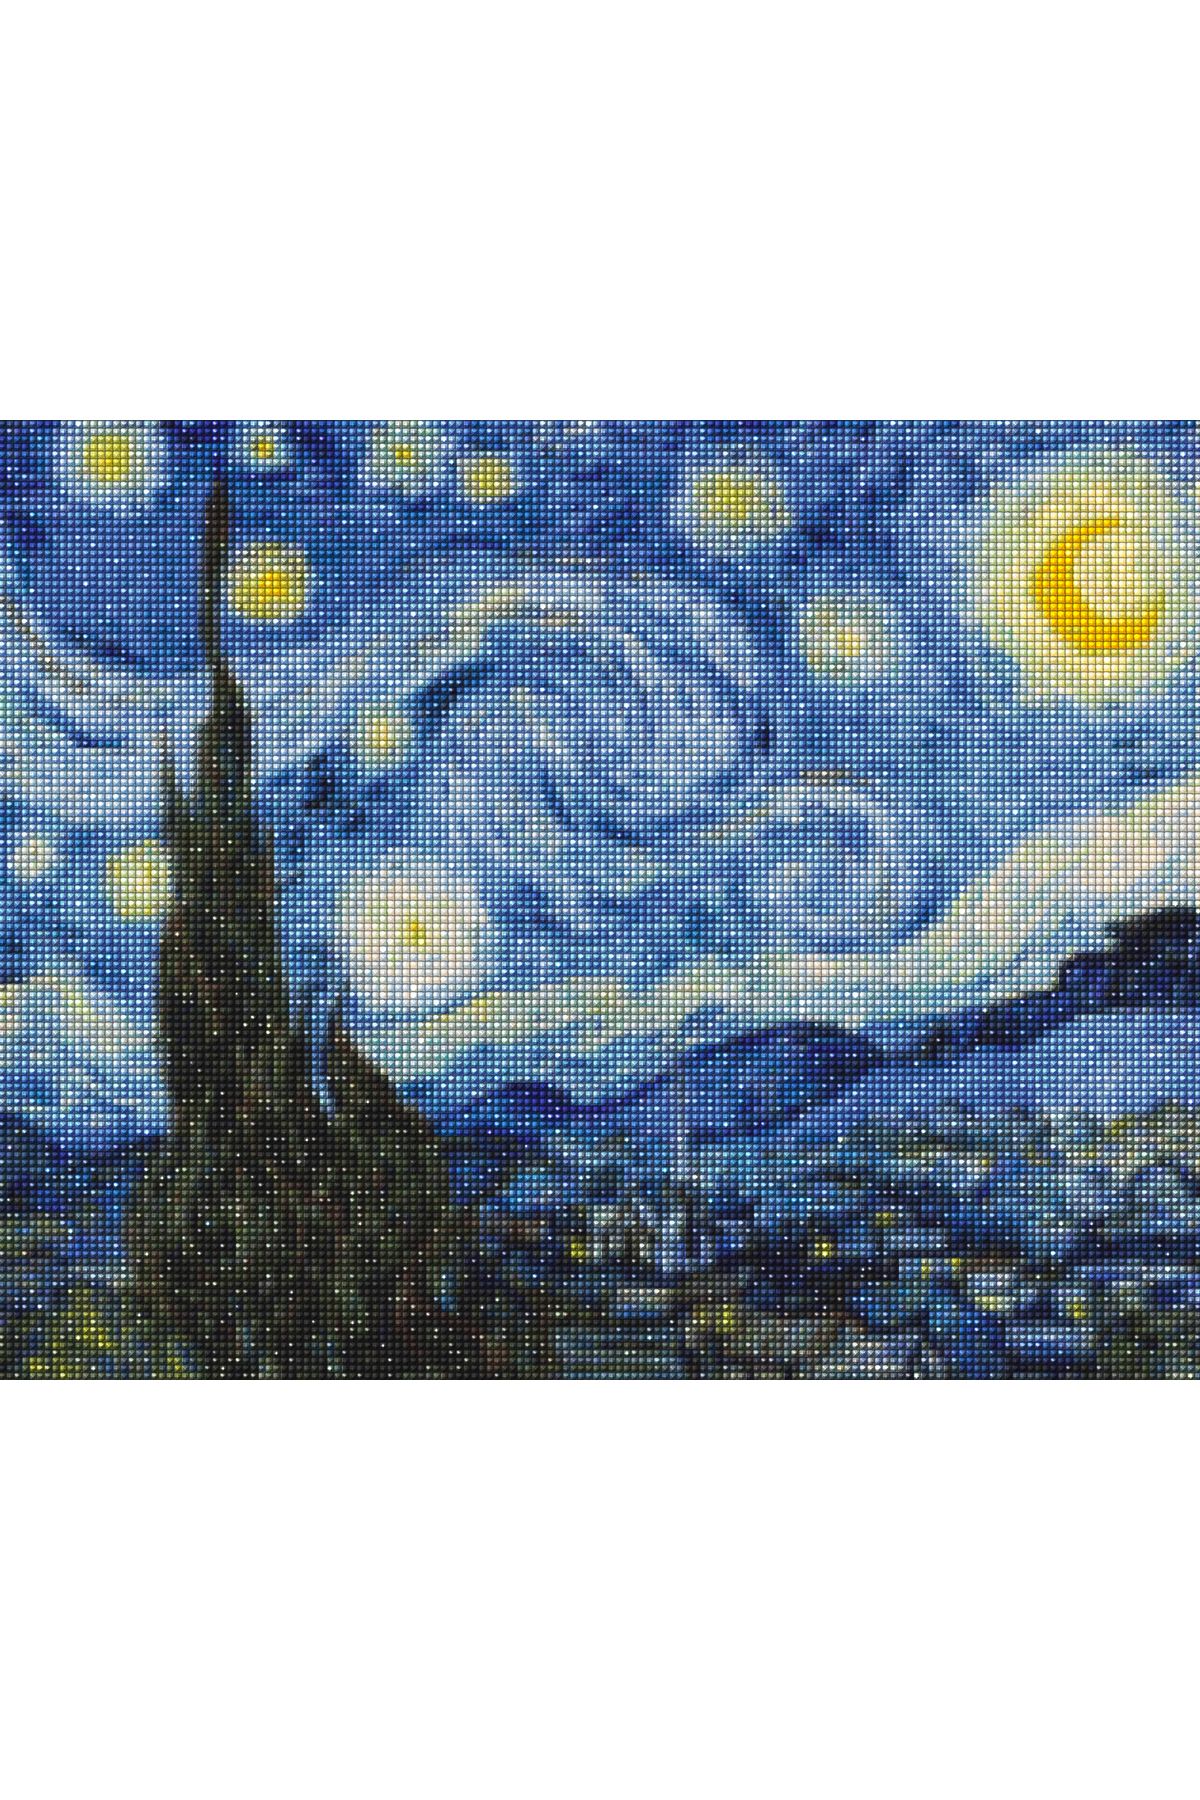 MAXİ Yıldızlı Gece - Diamond Painting, Elmaslı Goblen, Mozaik Tablo, Elmas, Boncuk, Taş Işleme 50 X 40cm